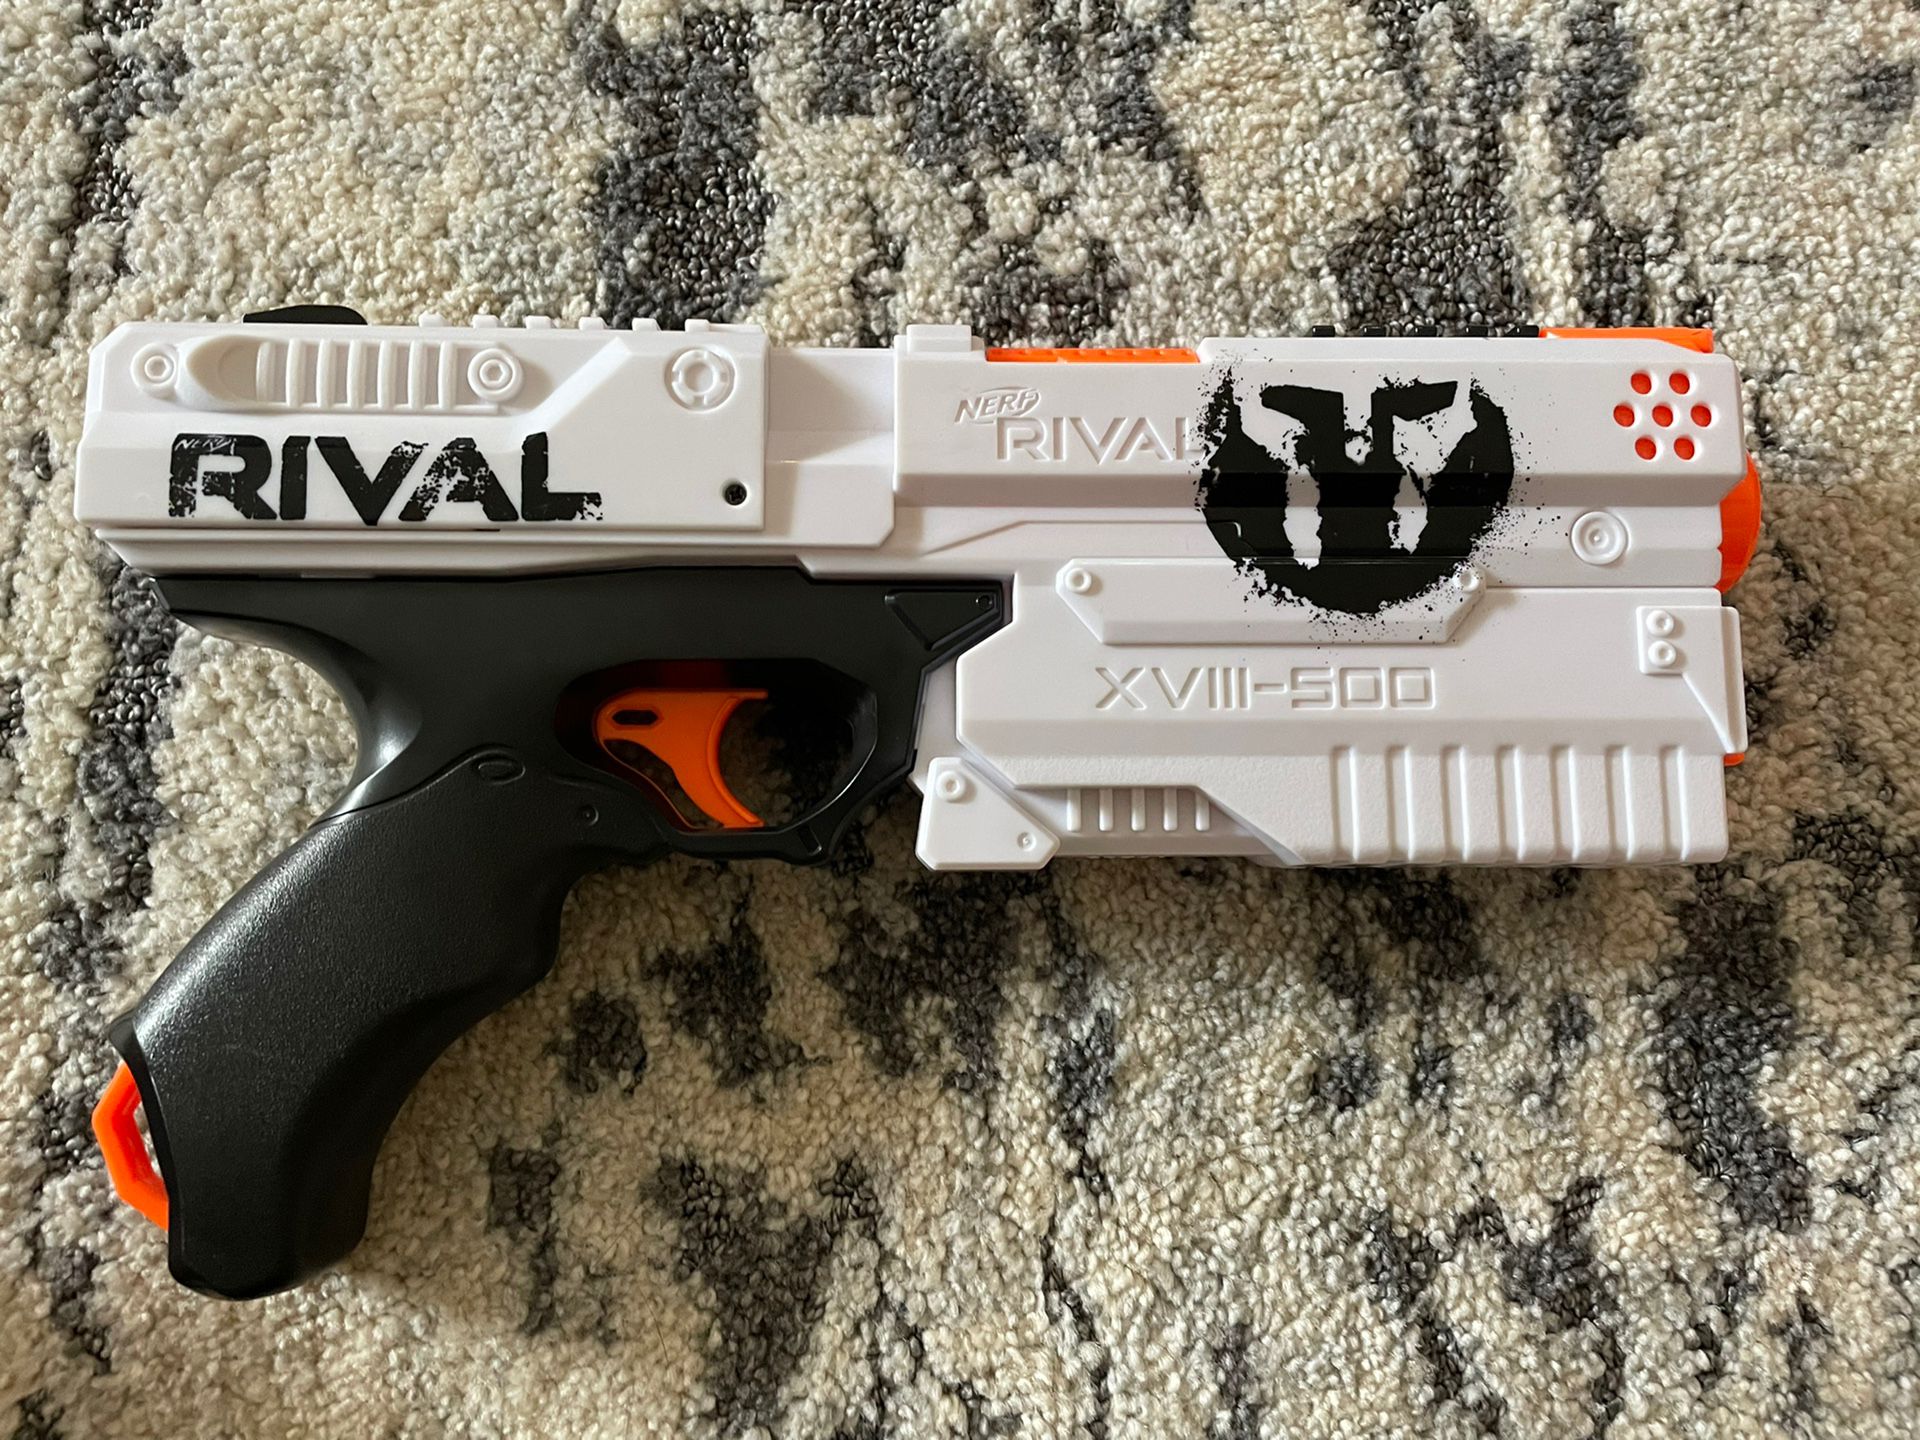 Rival Nerf Gun 